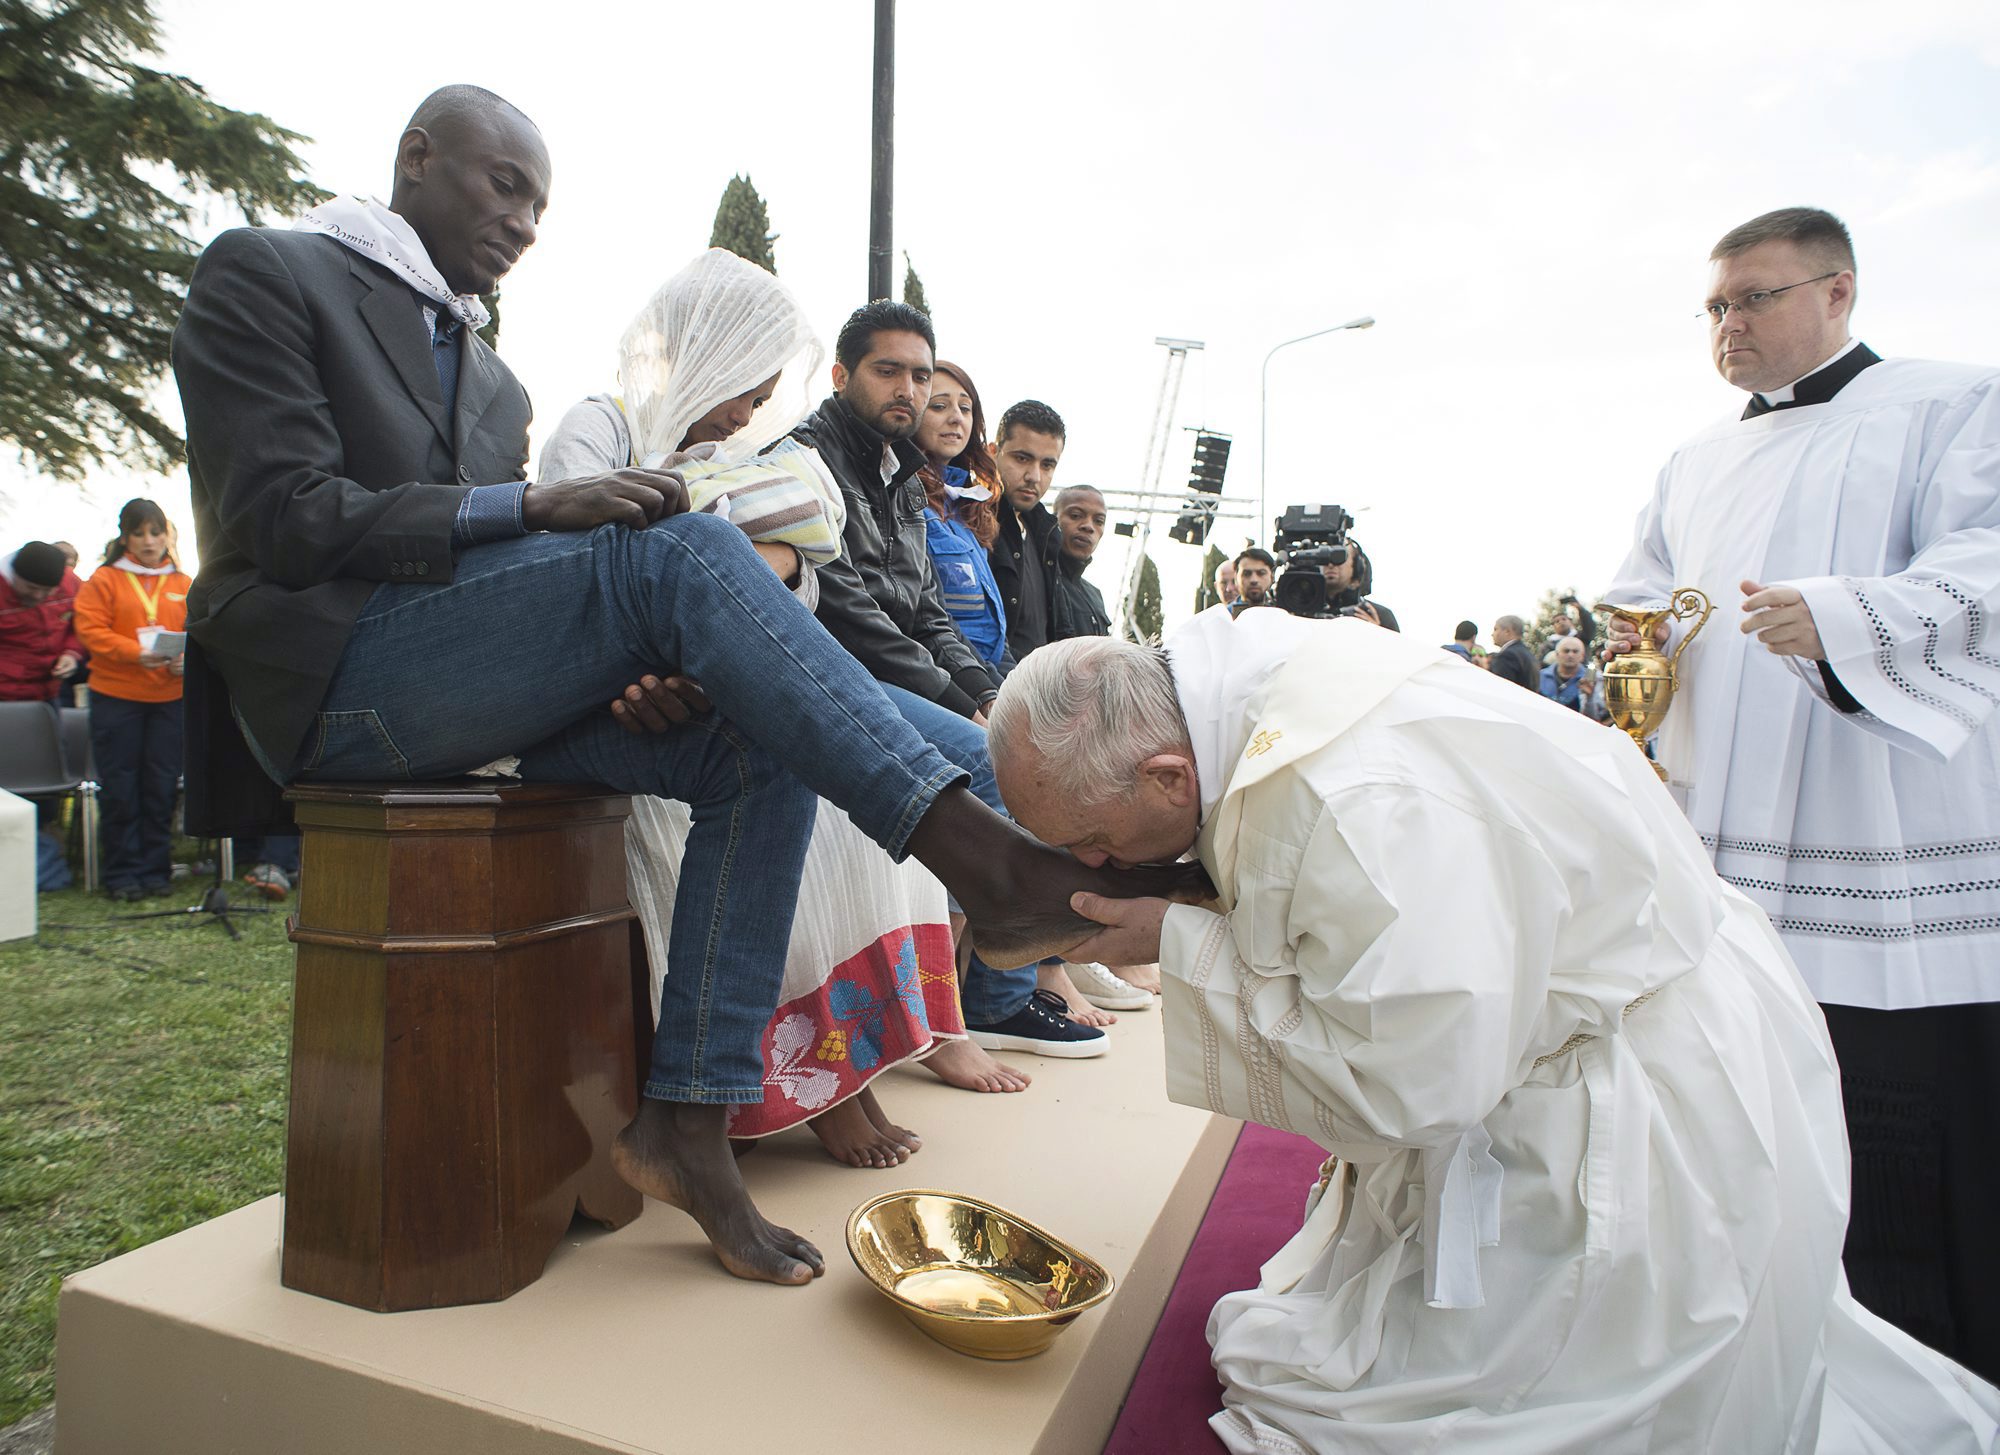 Castelnuovo di Porto, 2016. március 24. Ferenc pápa megcsókolja egy férfi lábfejét az utolsó vacsorára emlékezõ nagycsütörtöki mise alkalmával tartott lábmosás szertartáson a Rómától harminc kilométerre levõ Castelnuovo di Porto menekülttáborában 2016. március 24-én. A katolikus egyházfõ a rituálé során tizenegy menekültnek - köztük muzulmánoknak, kopt keresztényeknek és egy hindunak -, valamint egy táborban dolgozó önkéntesnek mosta meg a lábát. (MTI/AP pool/L'Osservatore Romano)